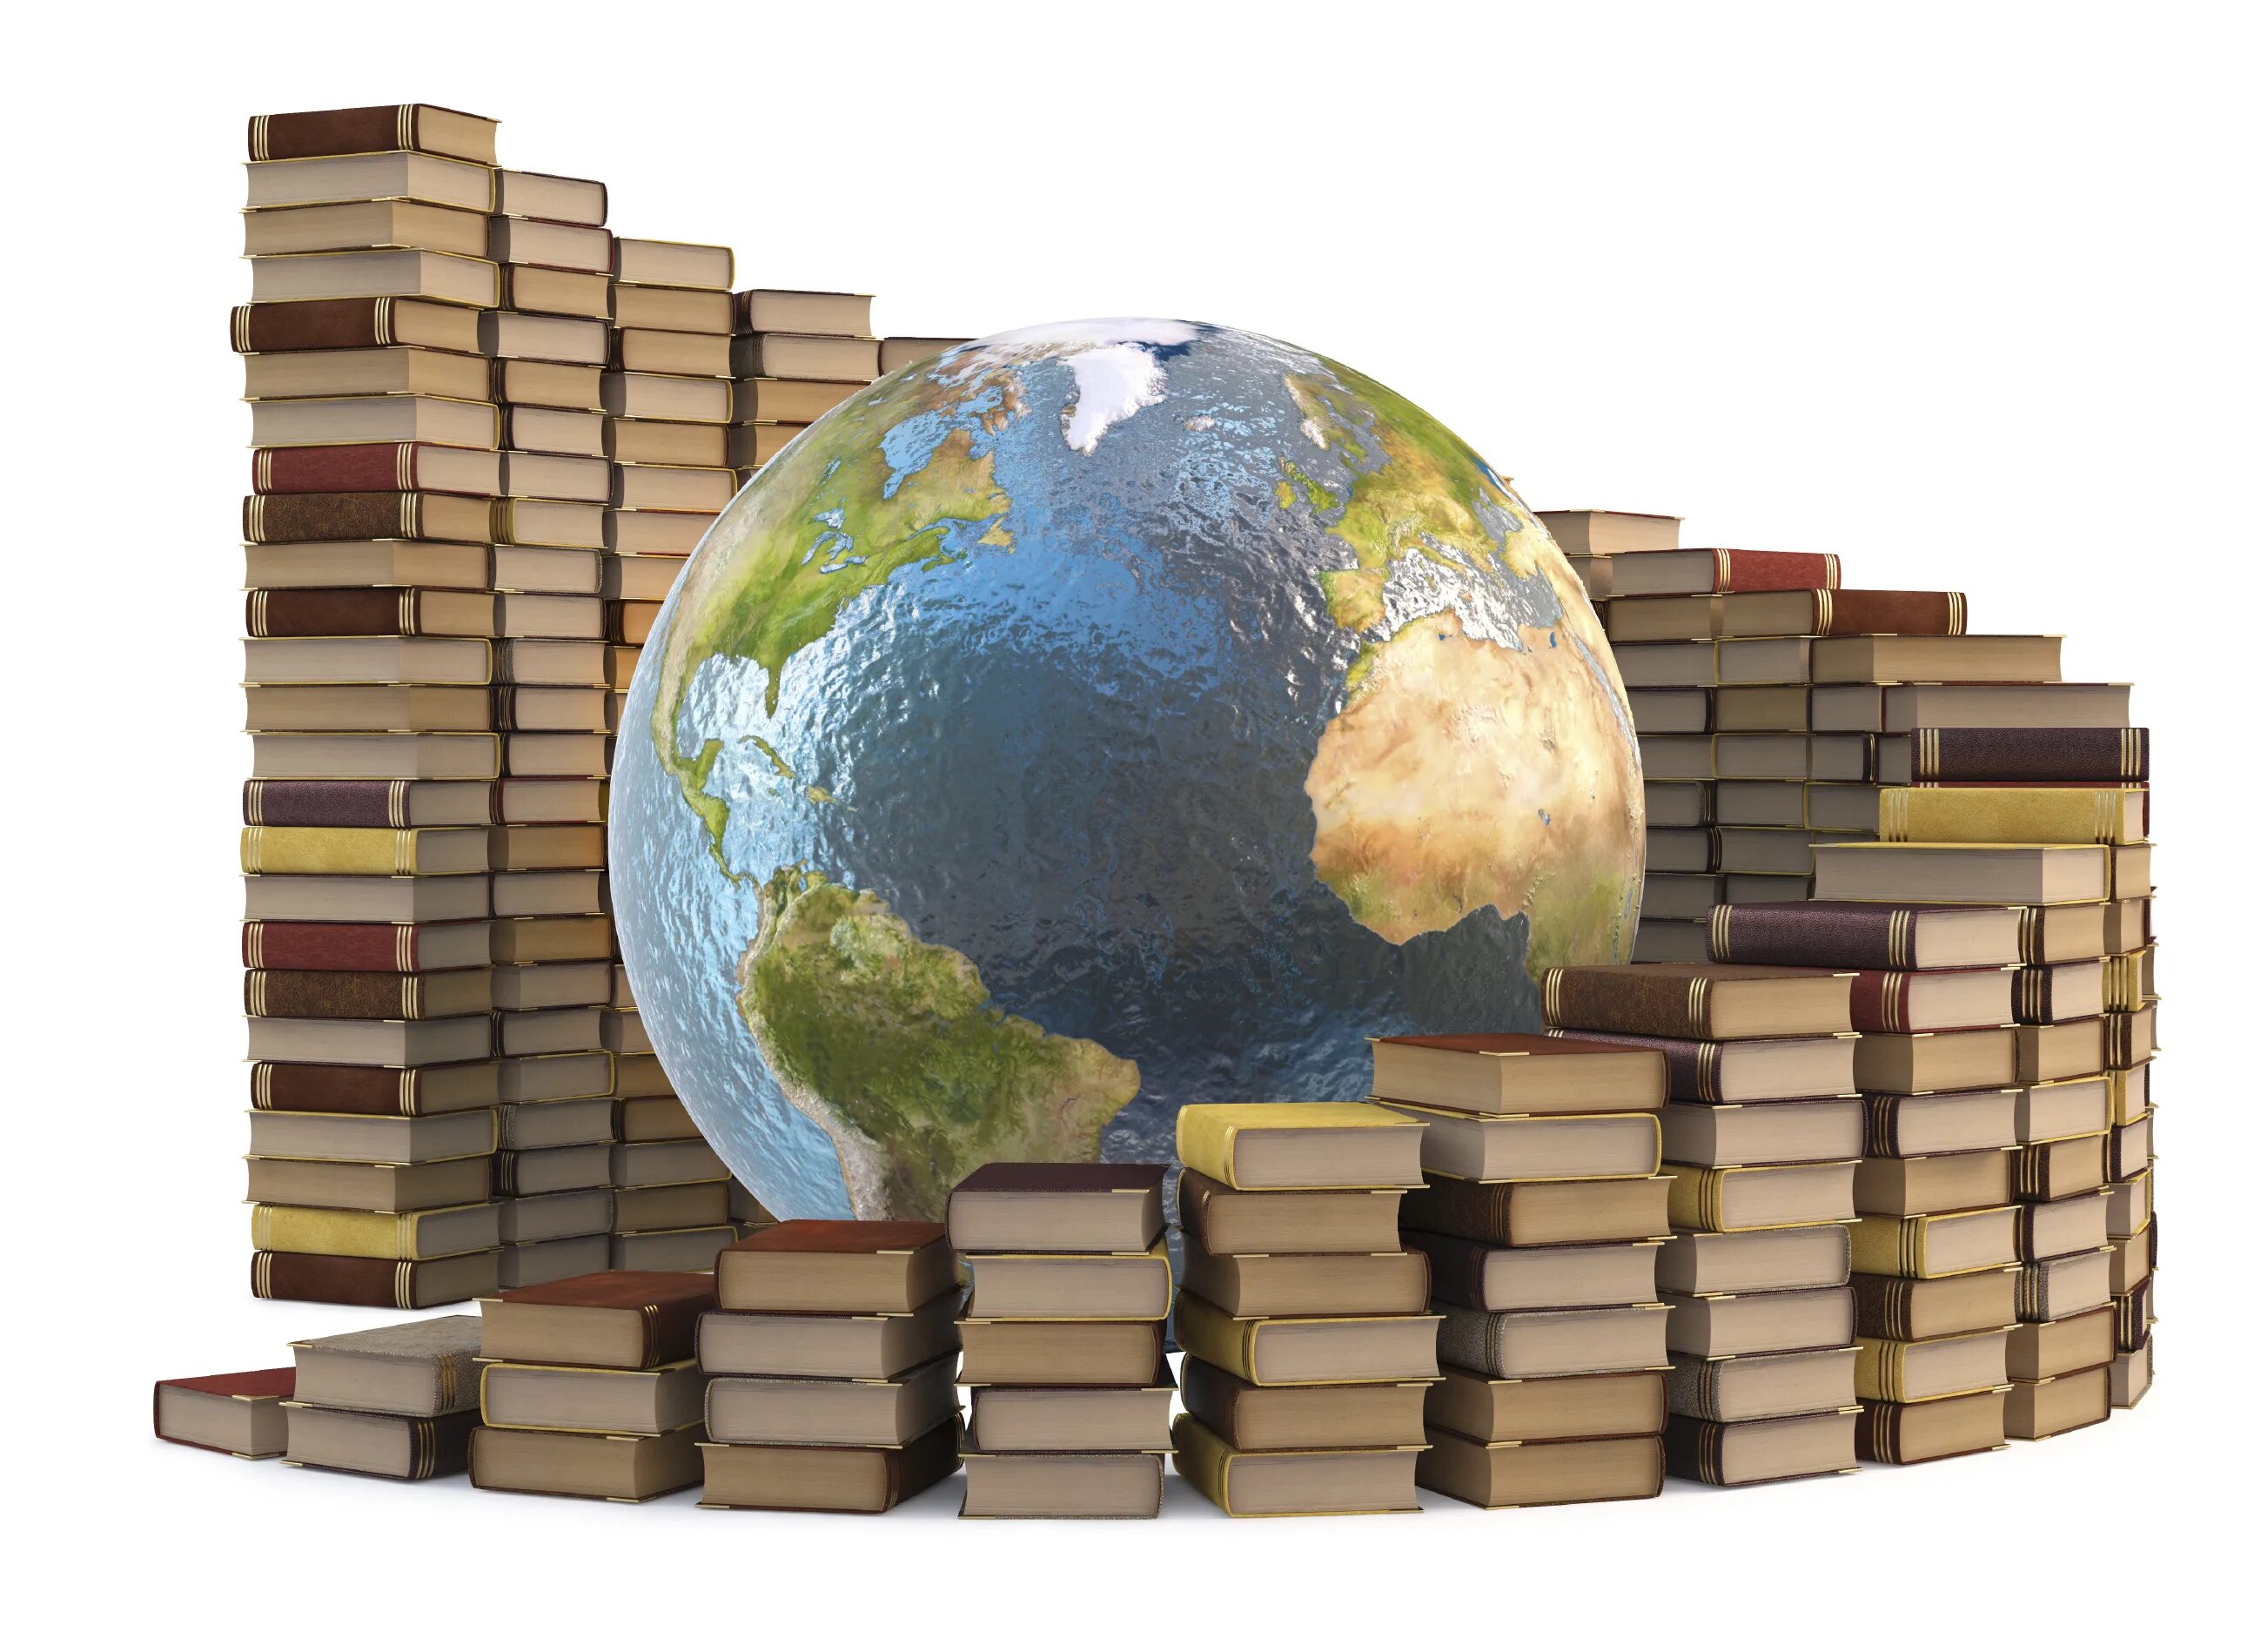 Обогащать новыми знаниями. Книга и земной шар. Глобус с книжками. Путешествие в мир знаний. Глобус и книги.